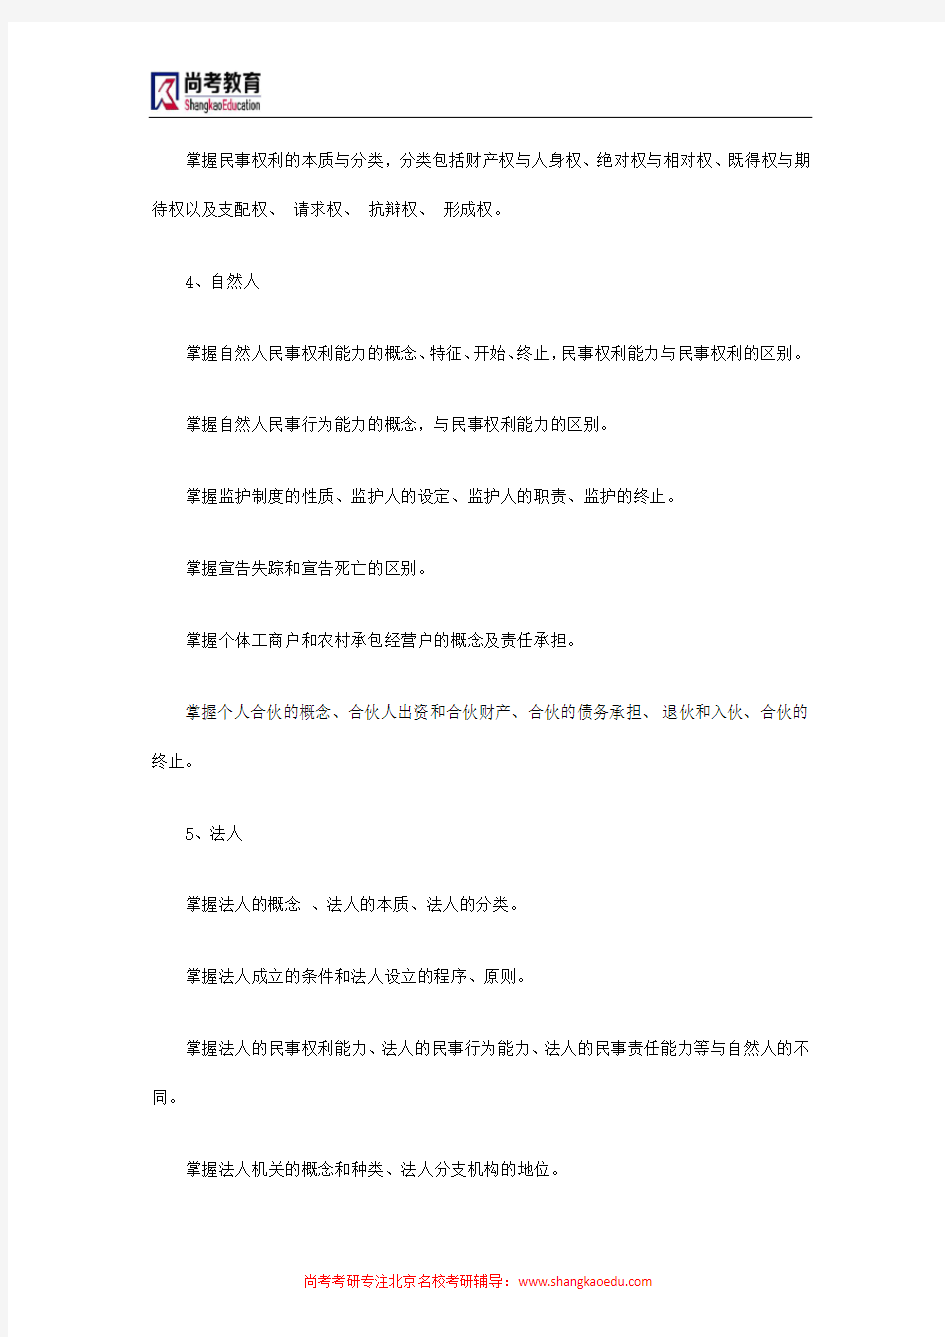 中国矿大(北京)考研科目618民商法考试大纲(2015年)